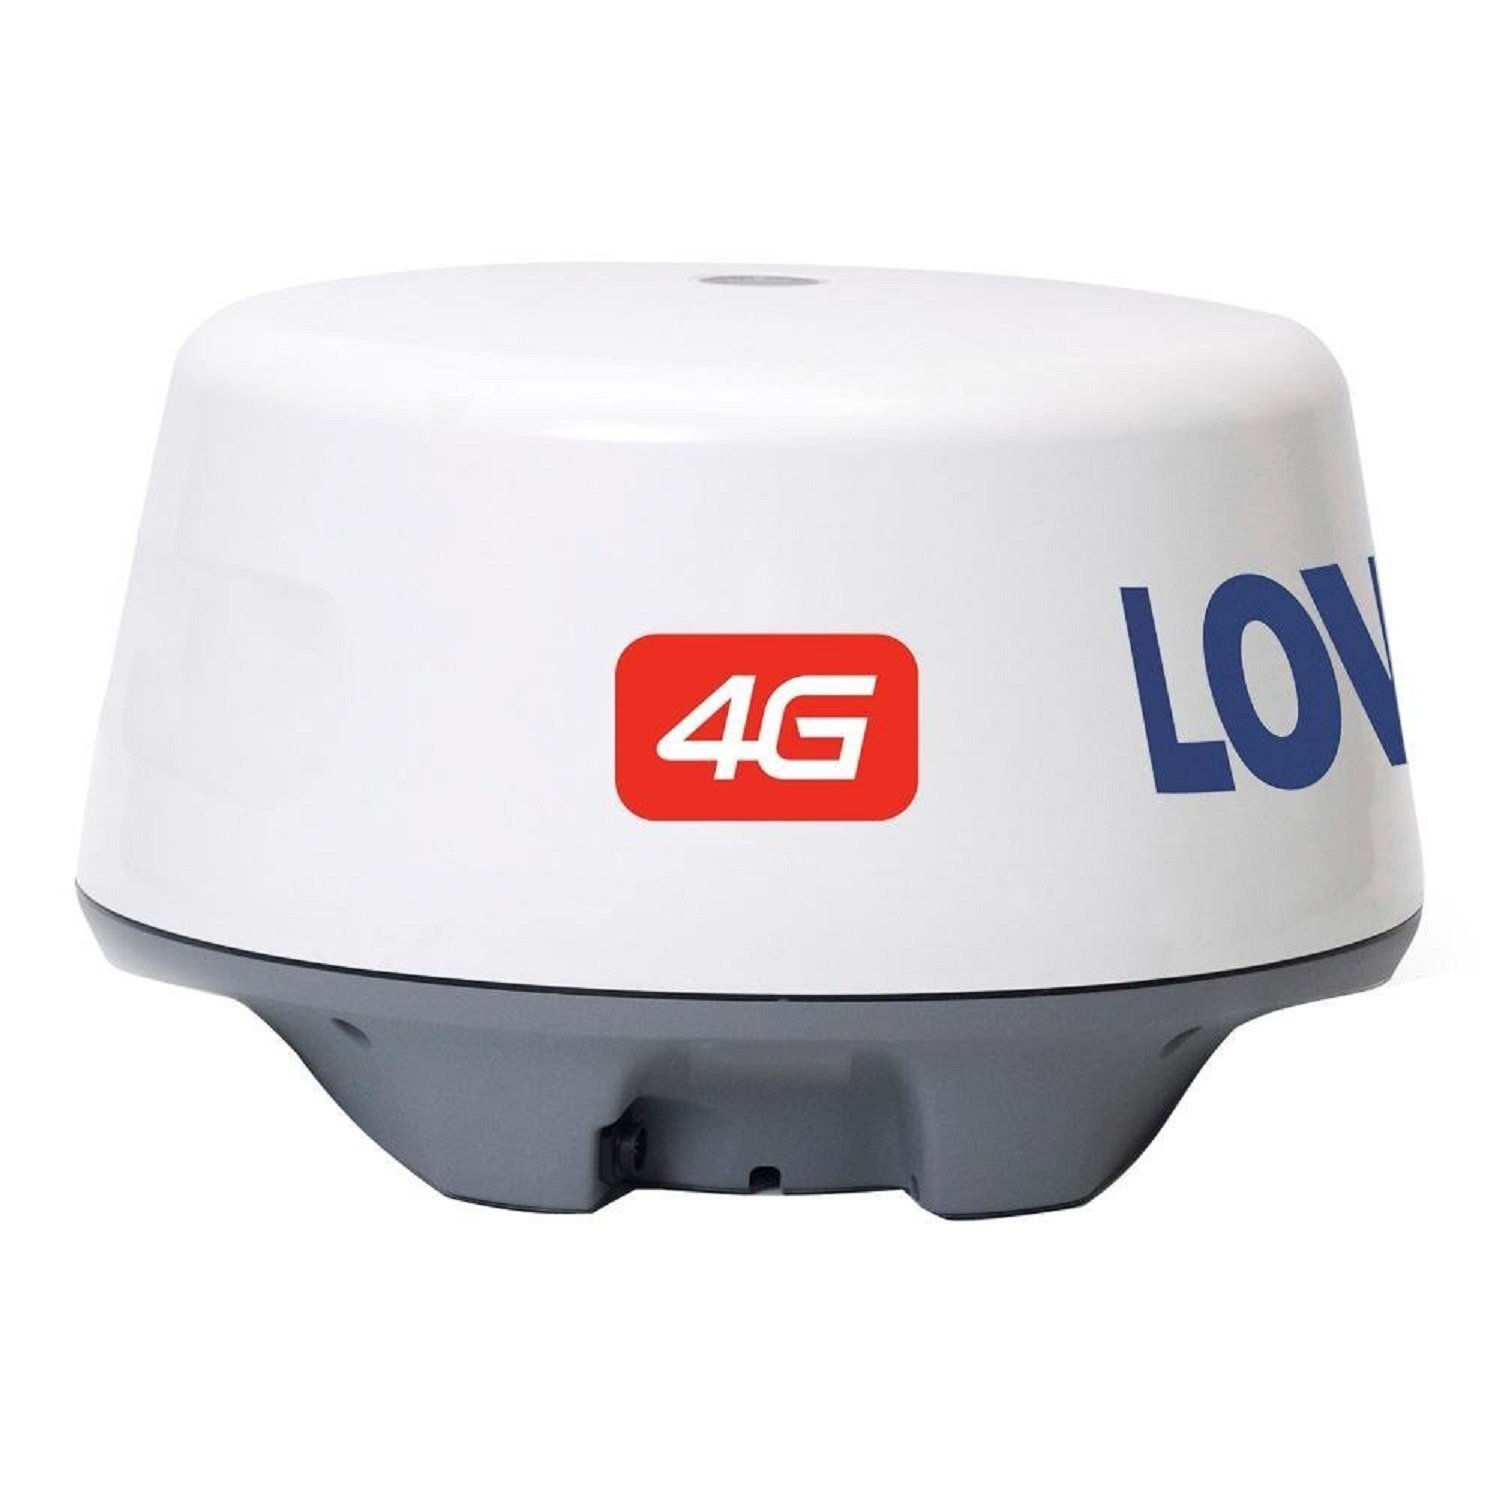 Lowrance 4G Broadband Radar